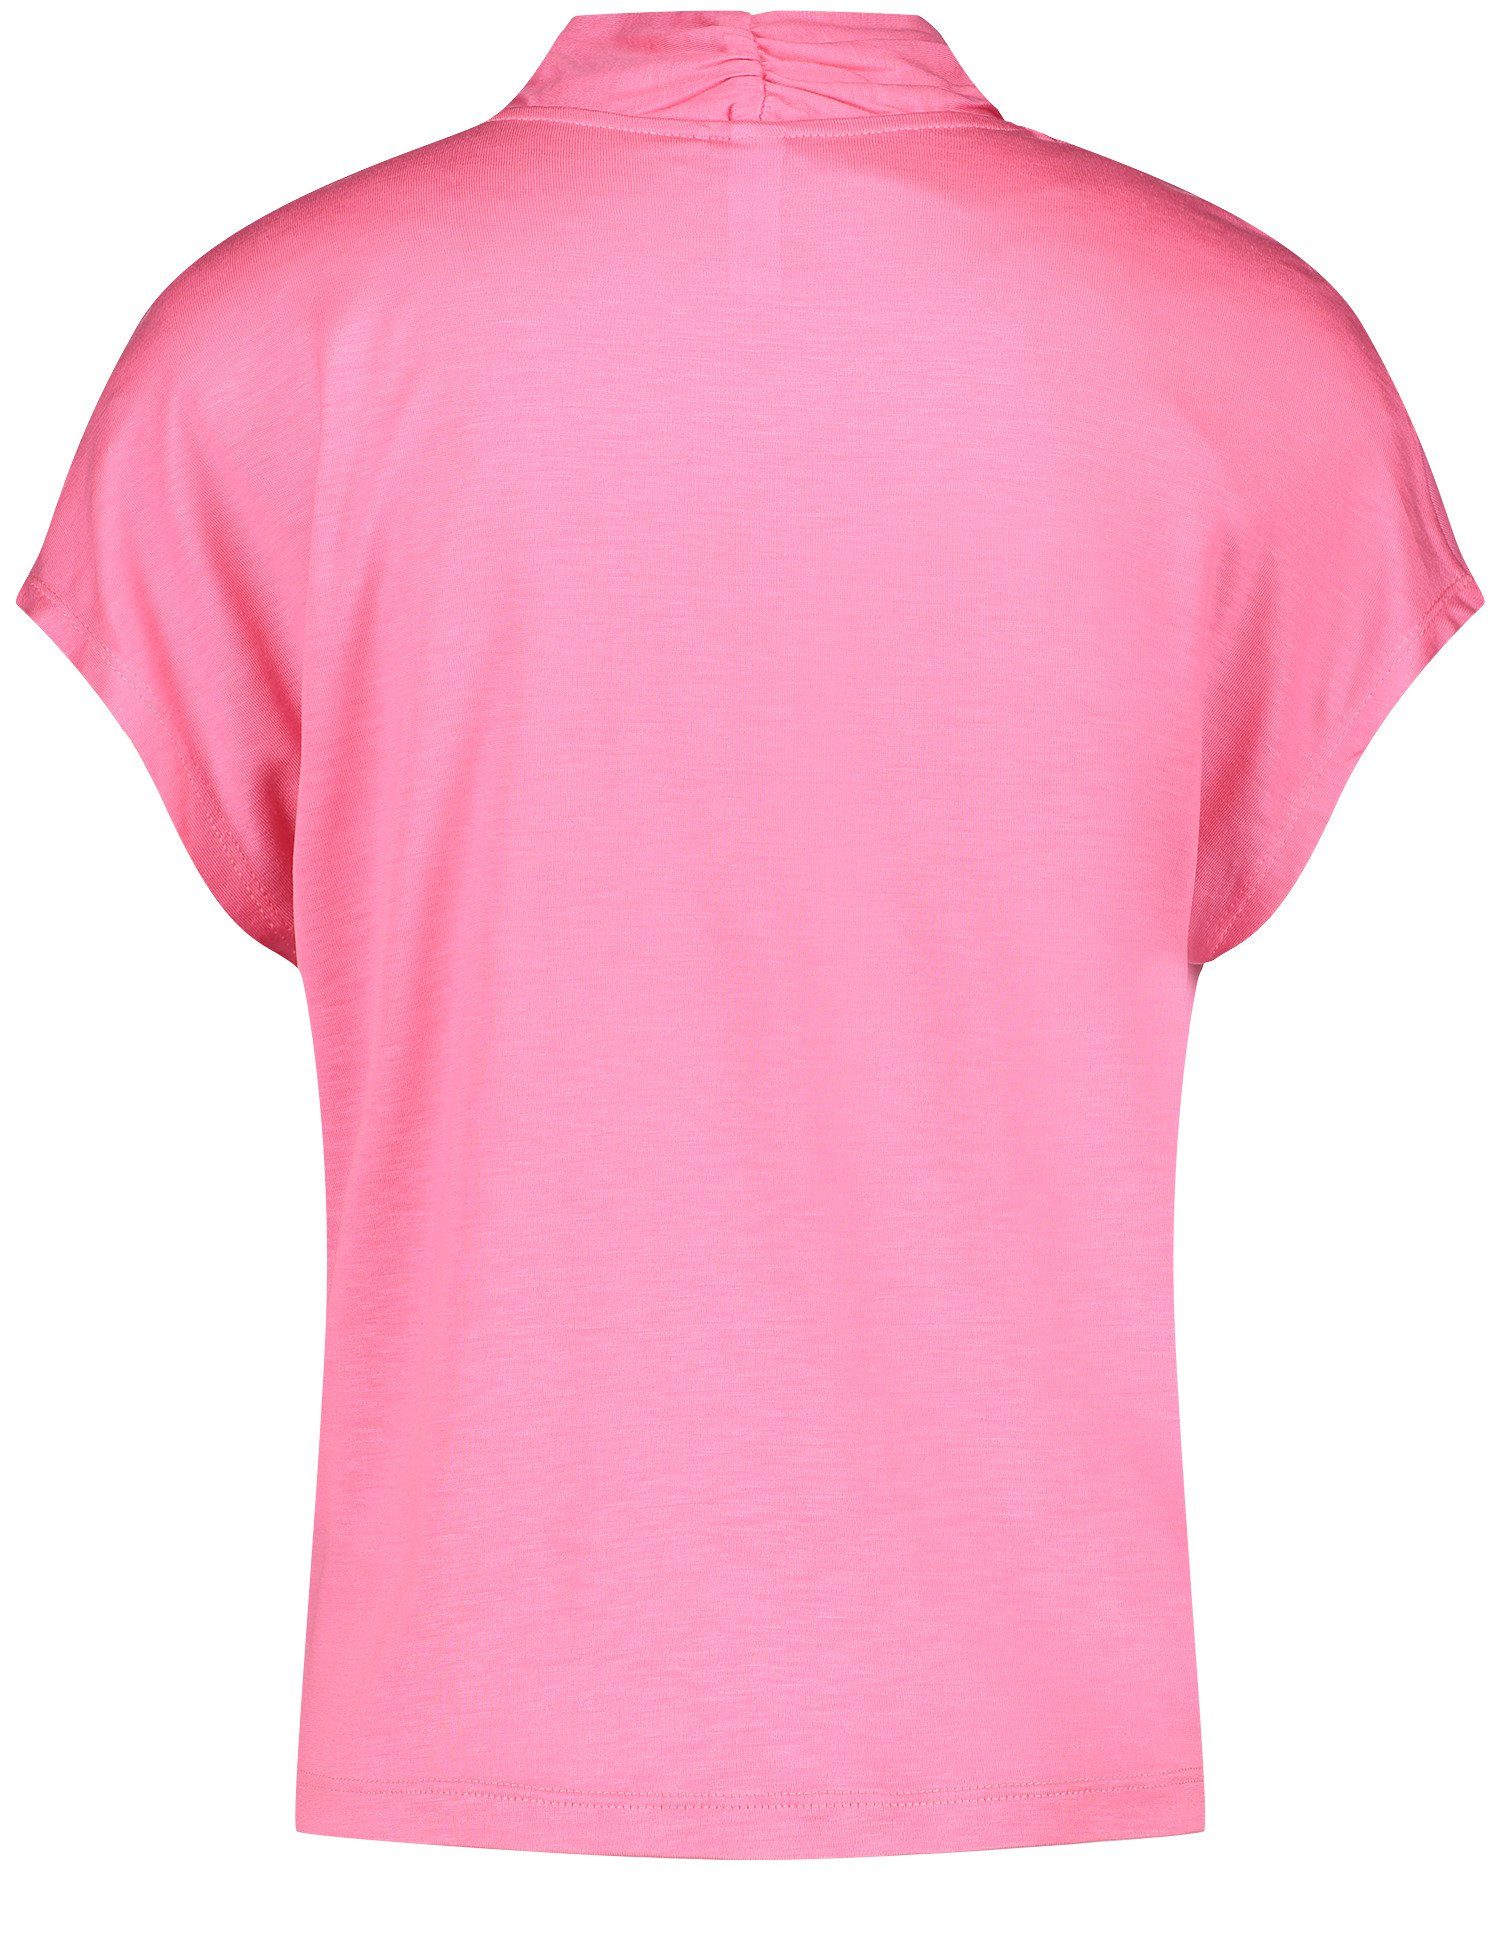 GERRY WEBER Kurzarmshirt Kurzarmshirt mit überschnittenen Soft Schultern Pink